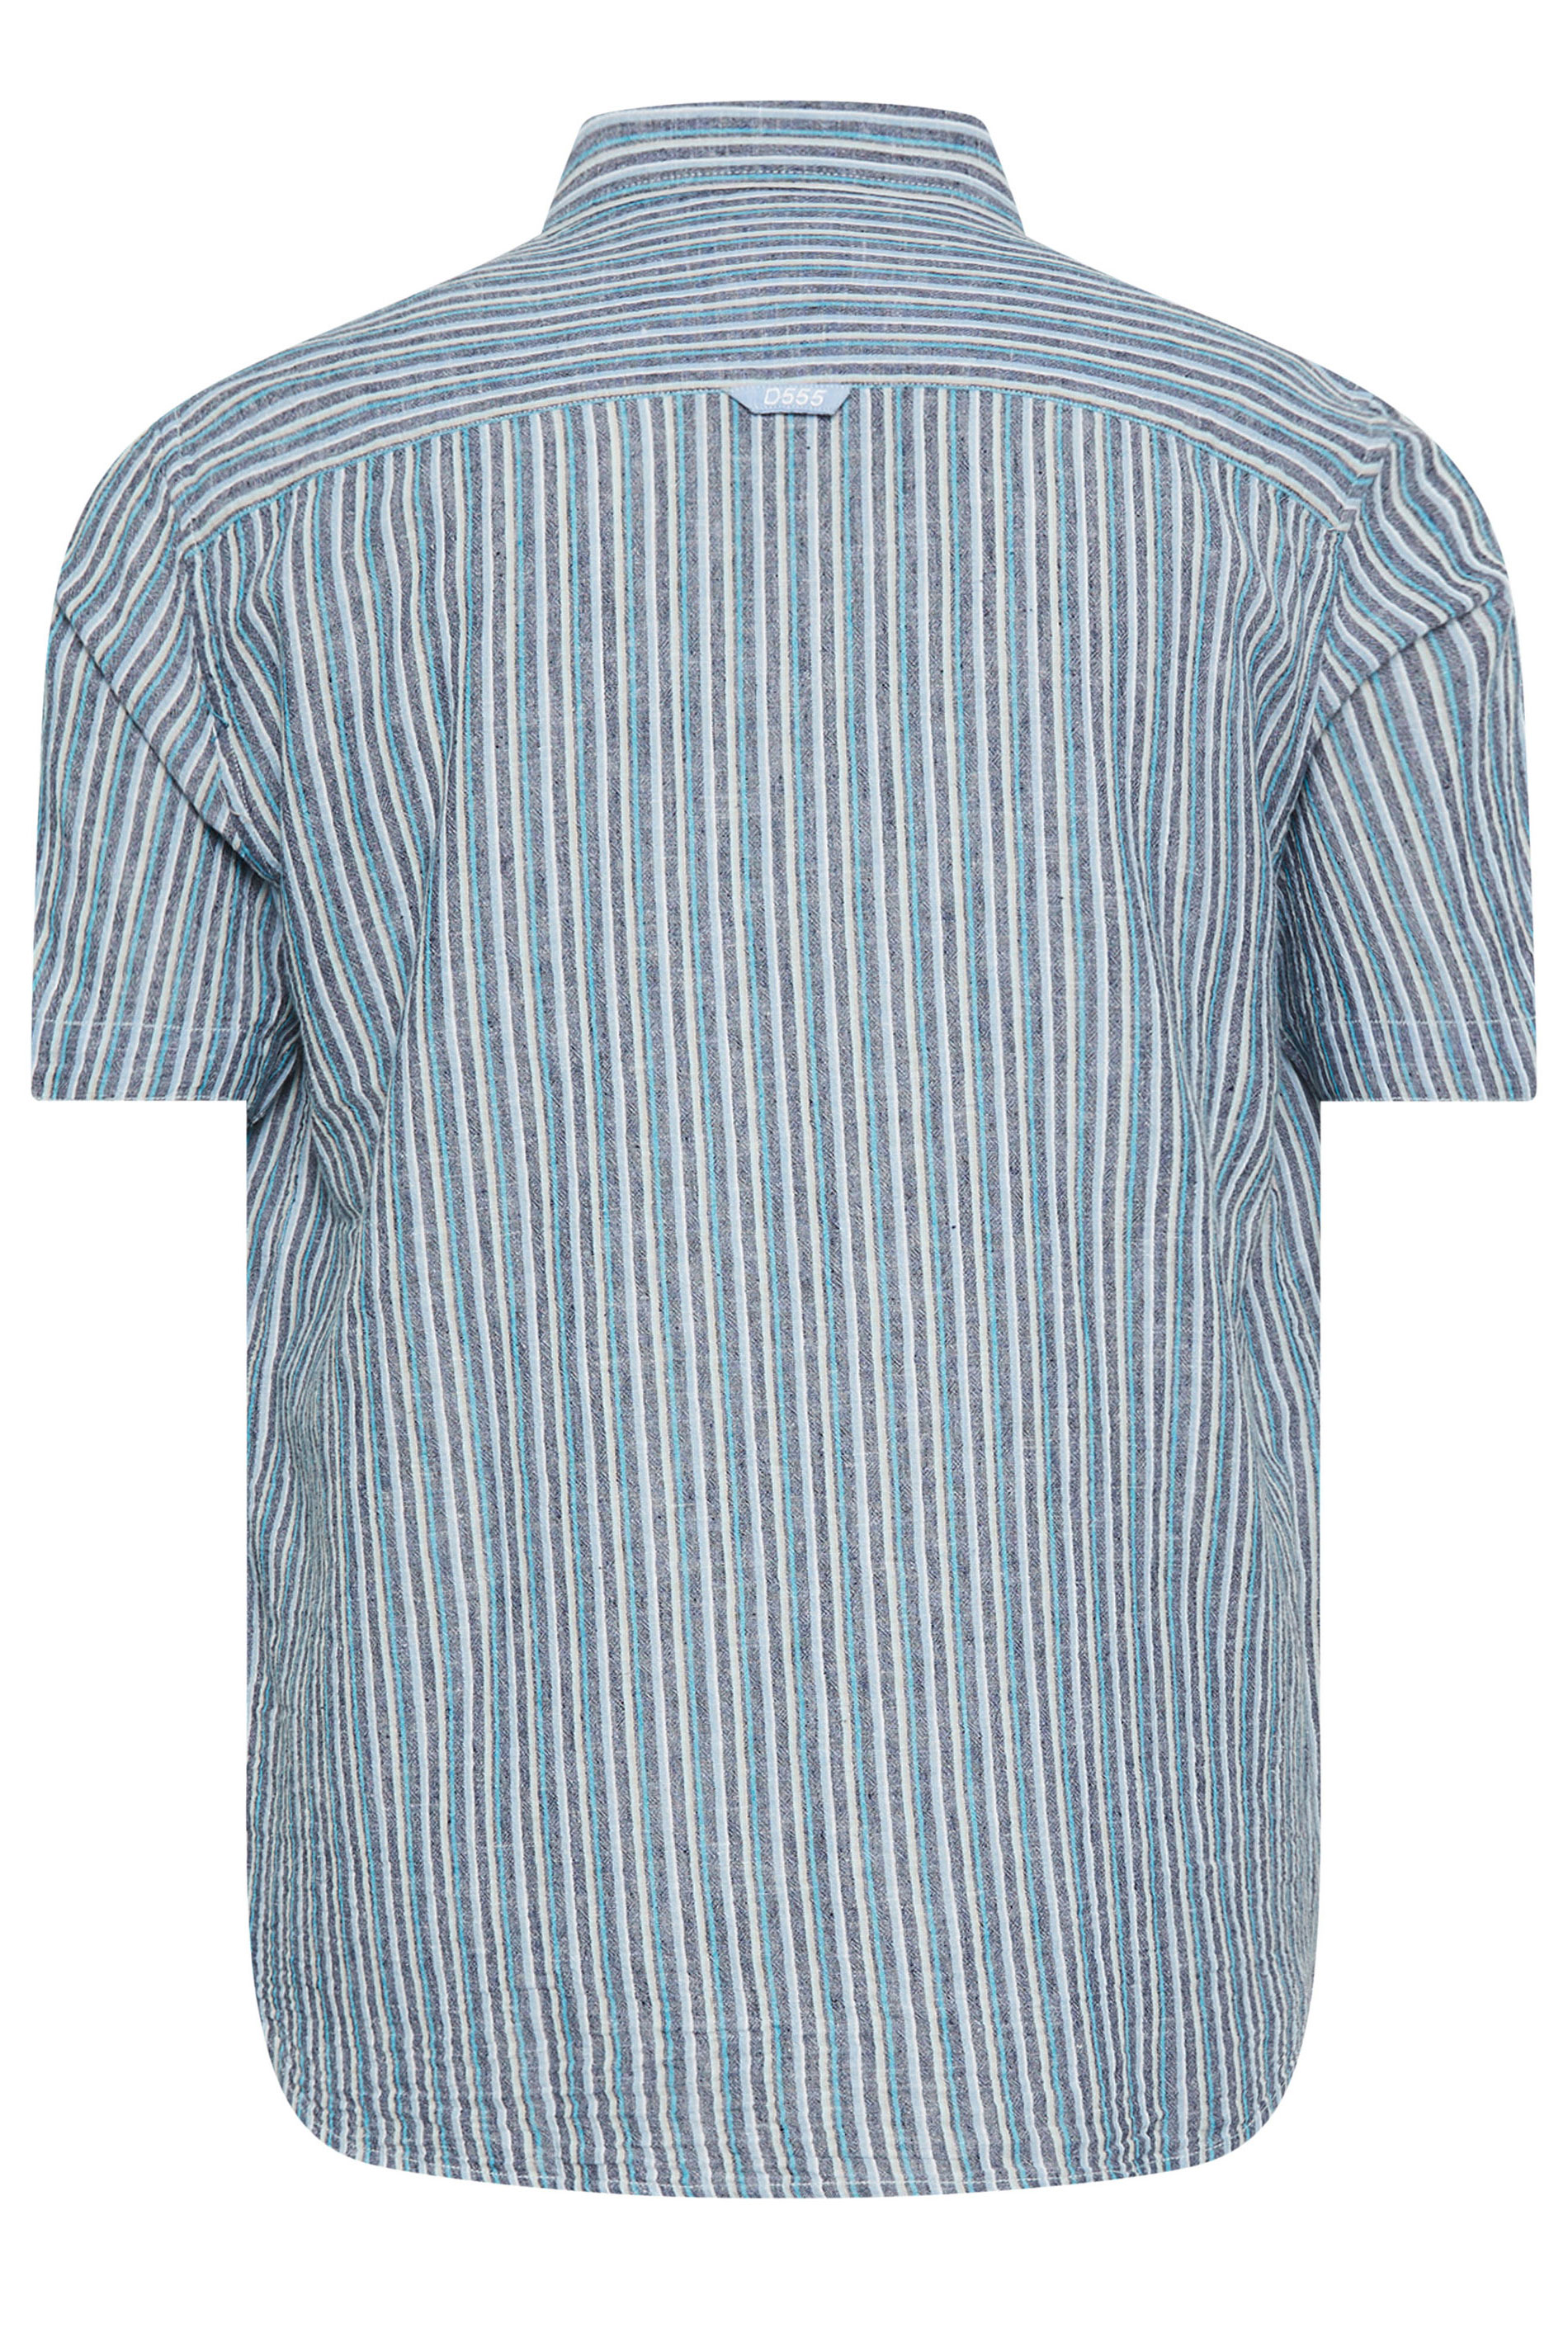 D555 Big & Tall Navy Blue Linen Vertical Stripe Short Sleeve Shirt | BadRhino 2